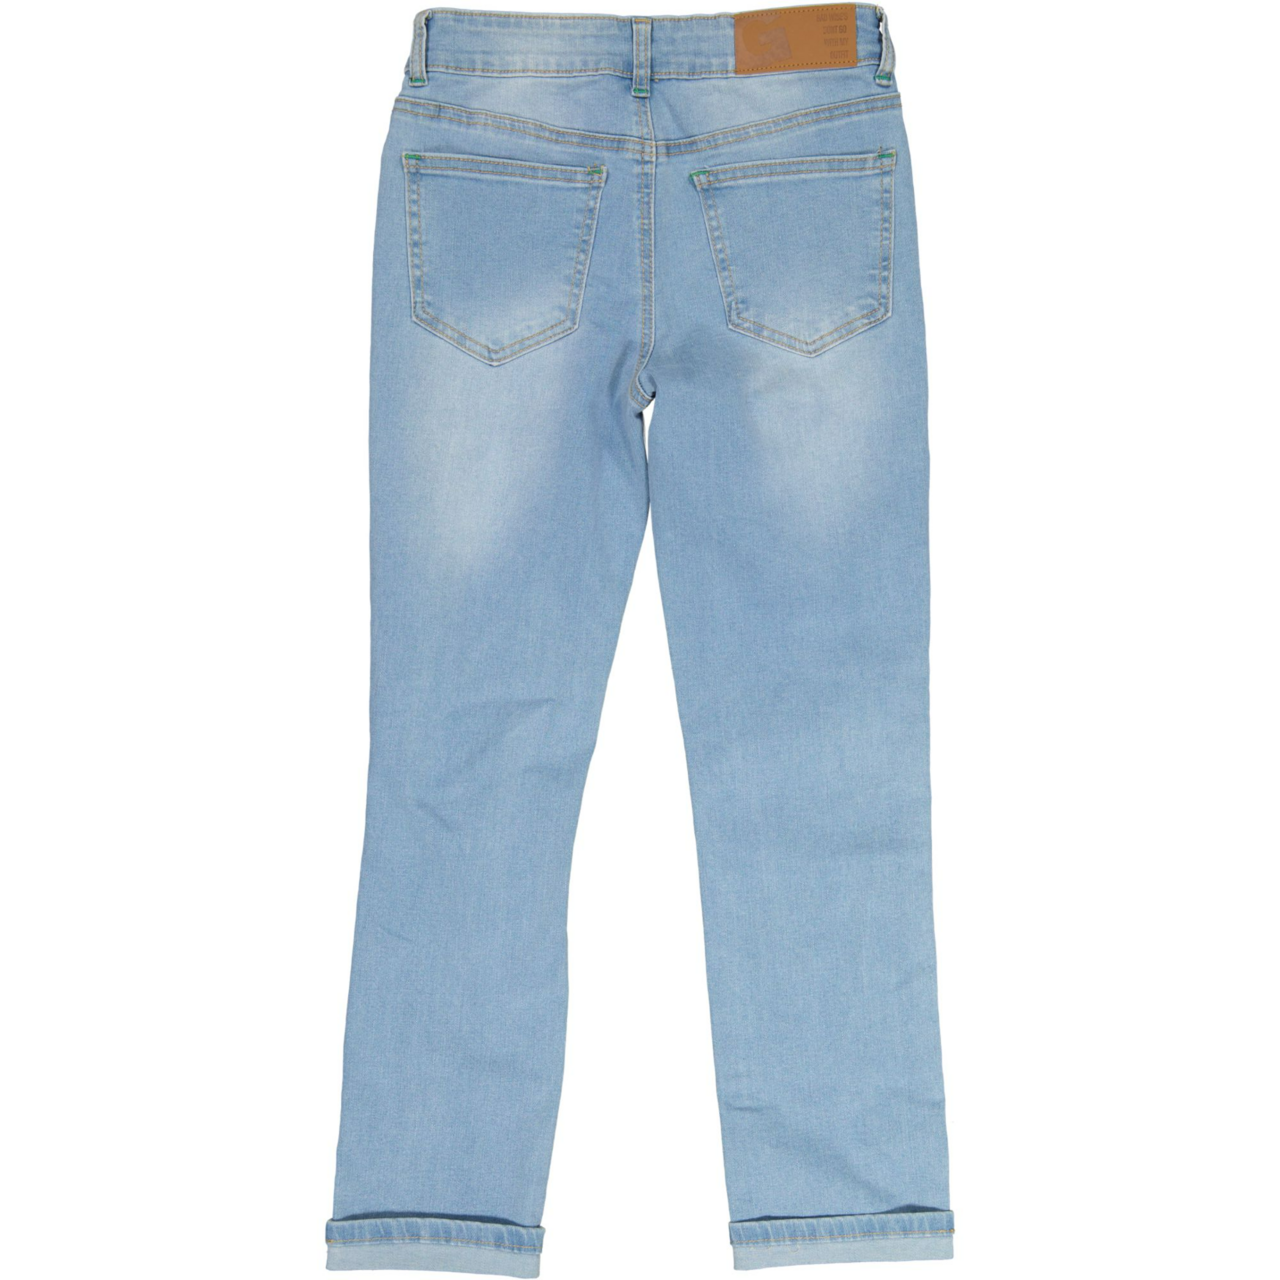 Unisex loose fit jeans Denim blue wash 134/140